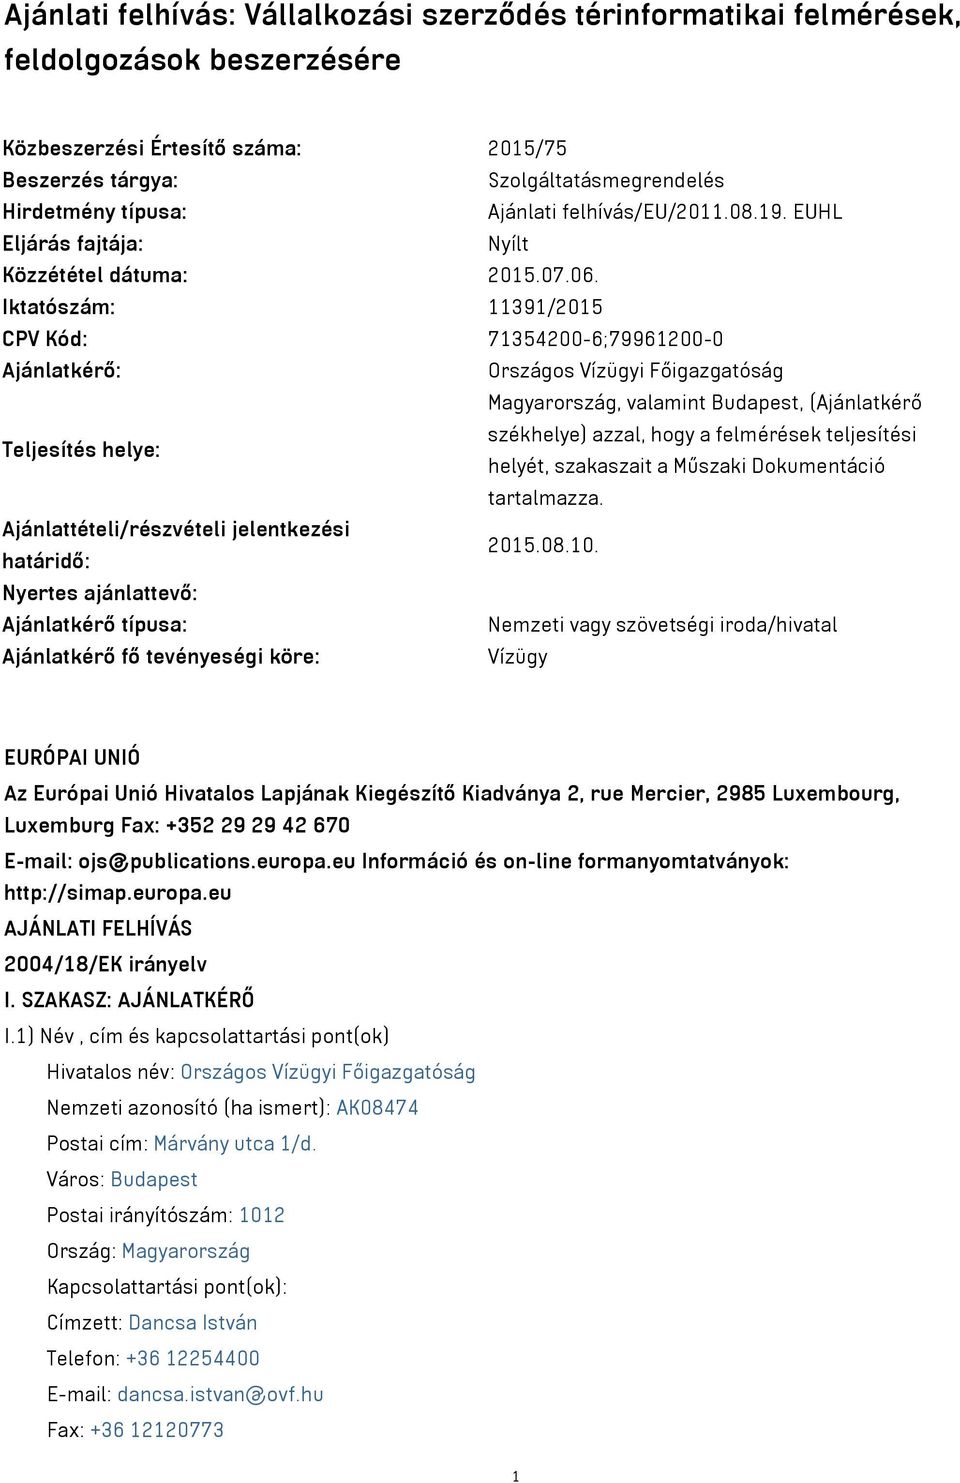 Iktatószám: 11391/2015 CPV Kód: 71354200-6;79961200-0 Ajánlatkérő: Országos Vízügyi Főigazgatóság Magyarország, valamint Budapest, (Ajánlatkérő Teljesítés helye: székhelye) azzal, hogy a felmérések